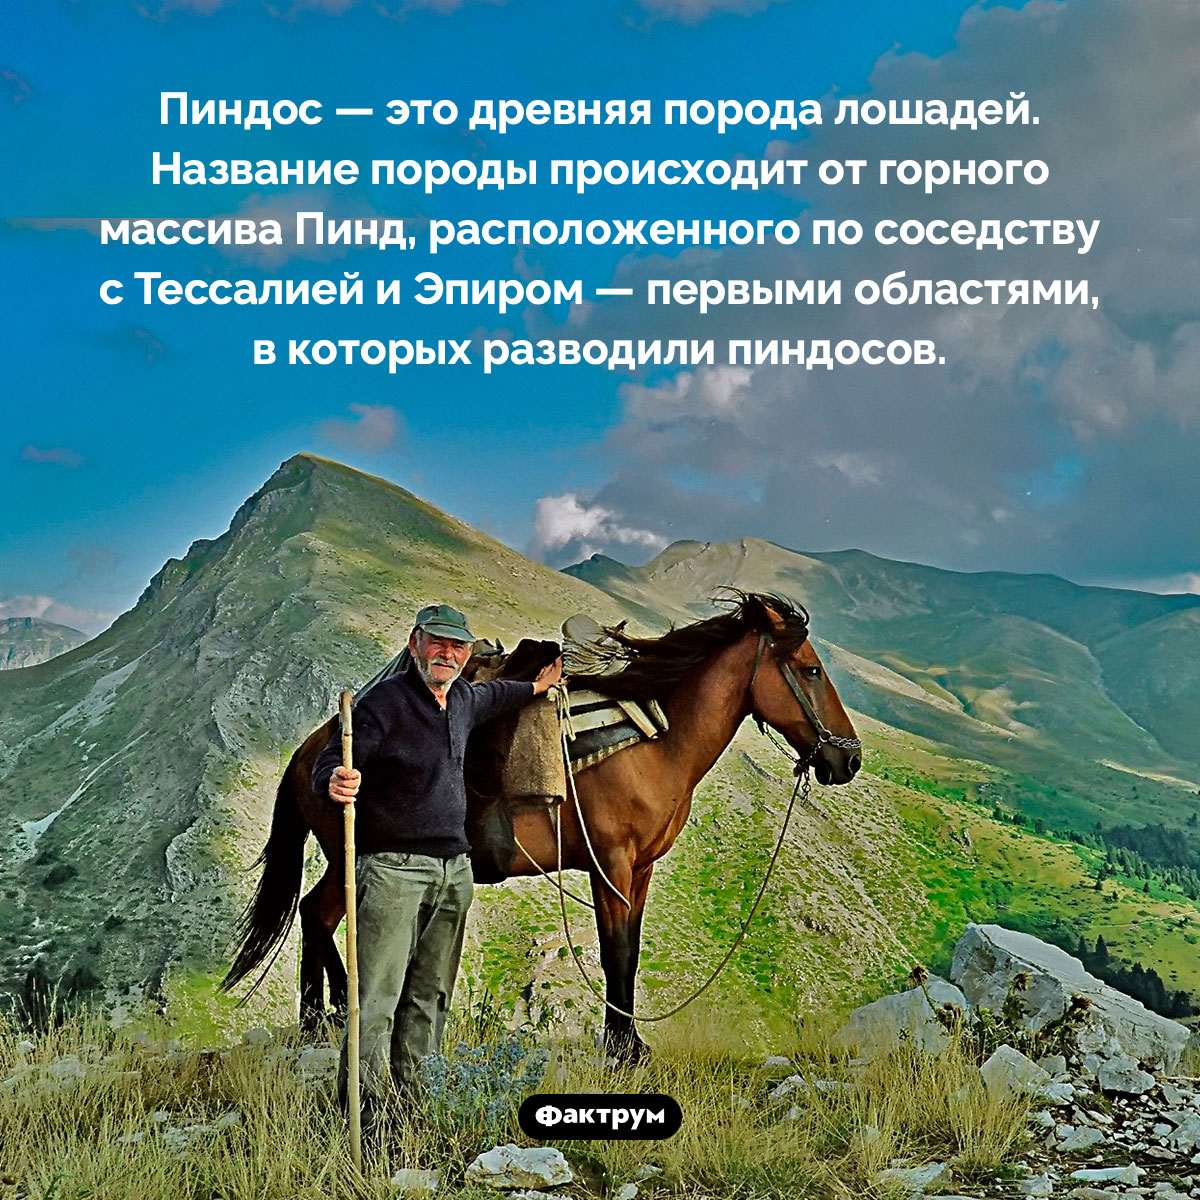 Пиндос — это лошадь. Пиндос — это древняя порода лошадей. Название породы происходит от горного массива Пинд, расположенного по соседству с Тессалией и Эпиром — первыми областями, в которых разводили пиндосов.